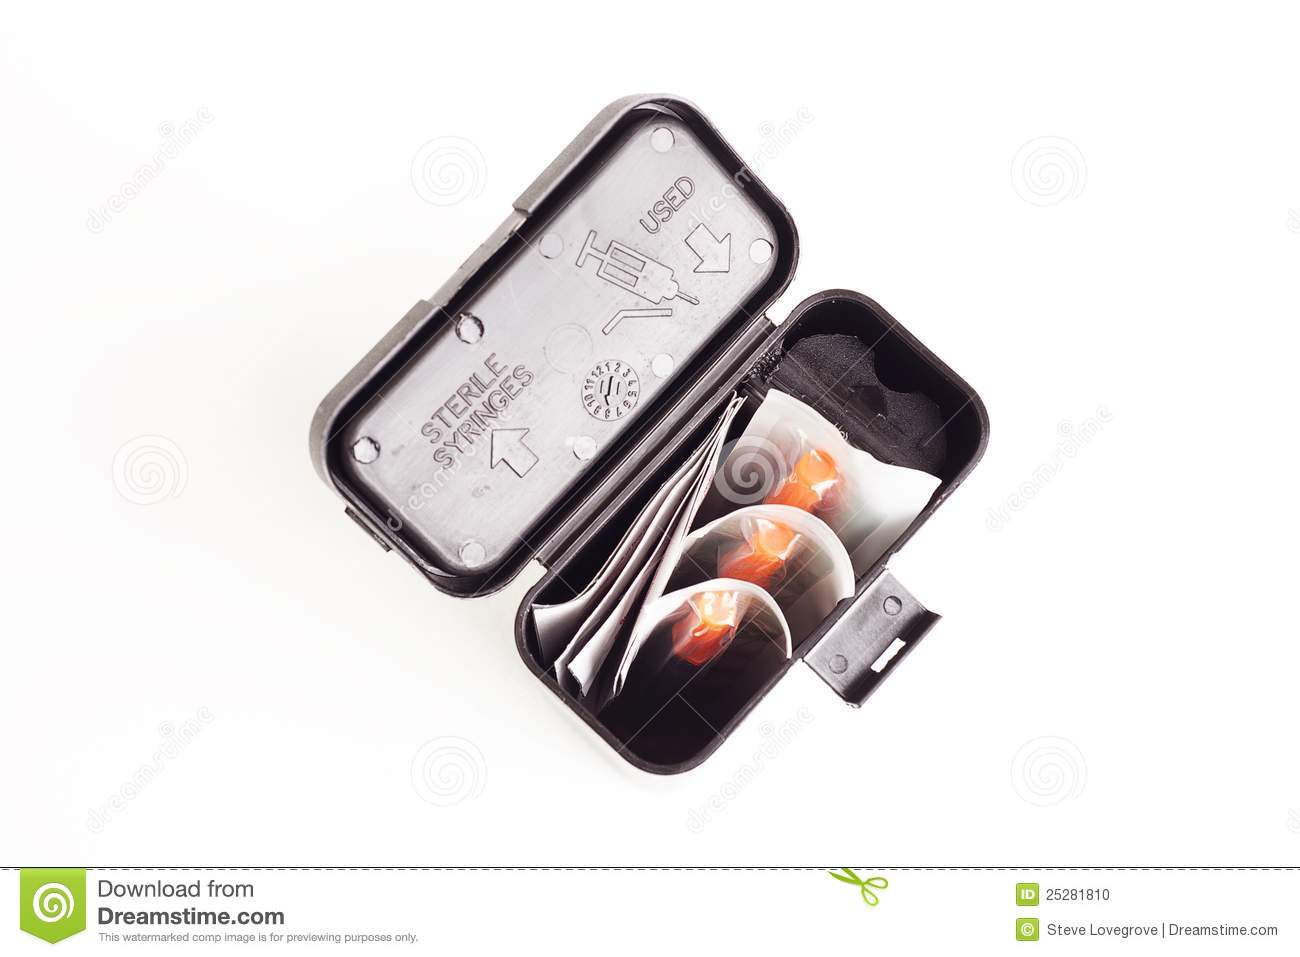 Drug User Syringe And Needle Kit Stock Photo   Image  25281810